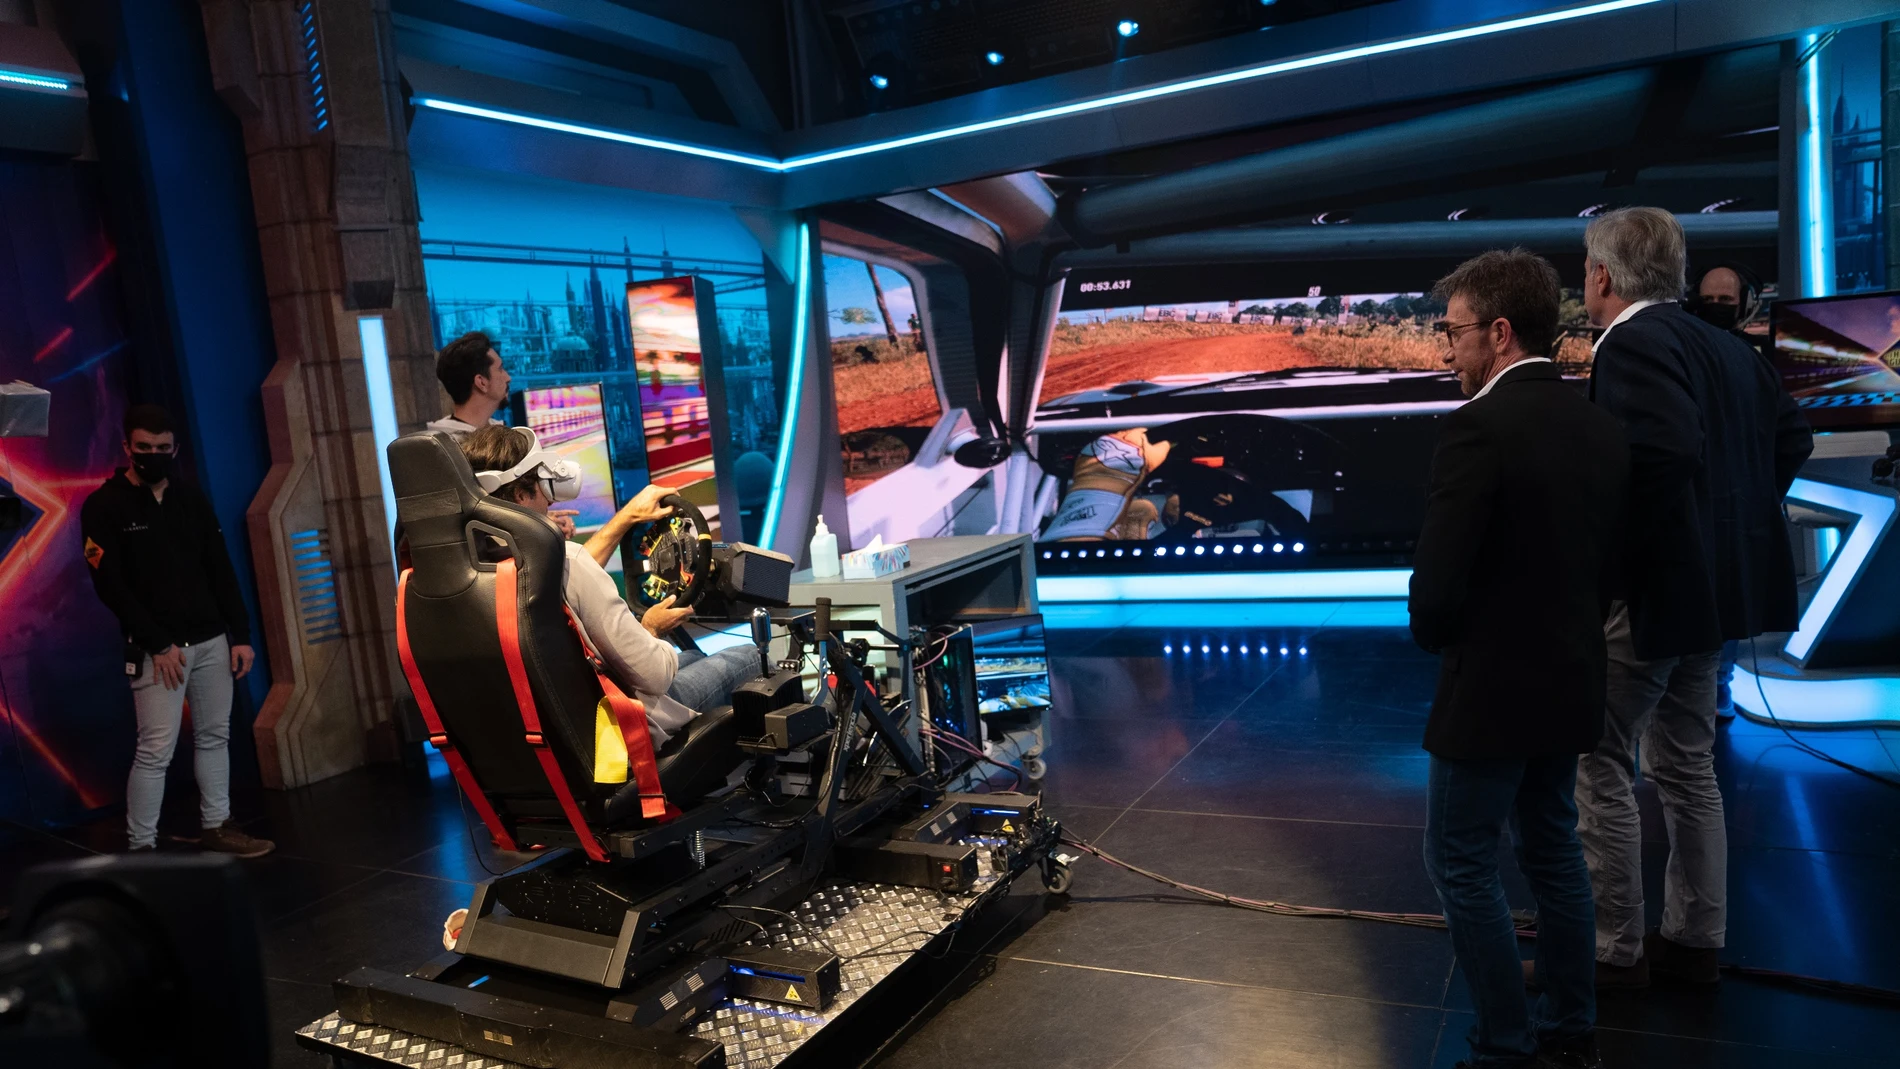 Carlos Sainz Jr, prueba en directo un simulador de conducción de última generación: "Un truco, conducir descalzo"